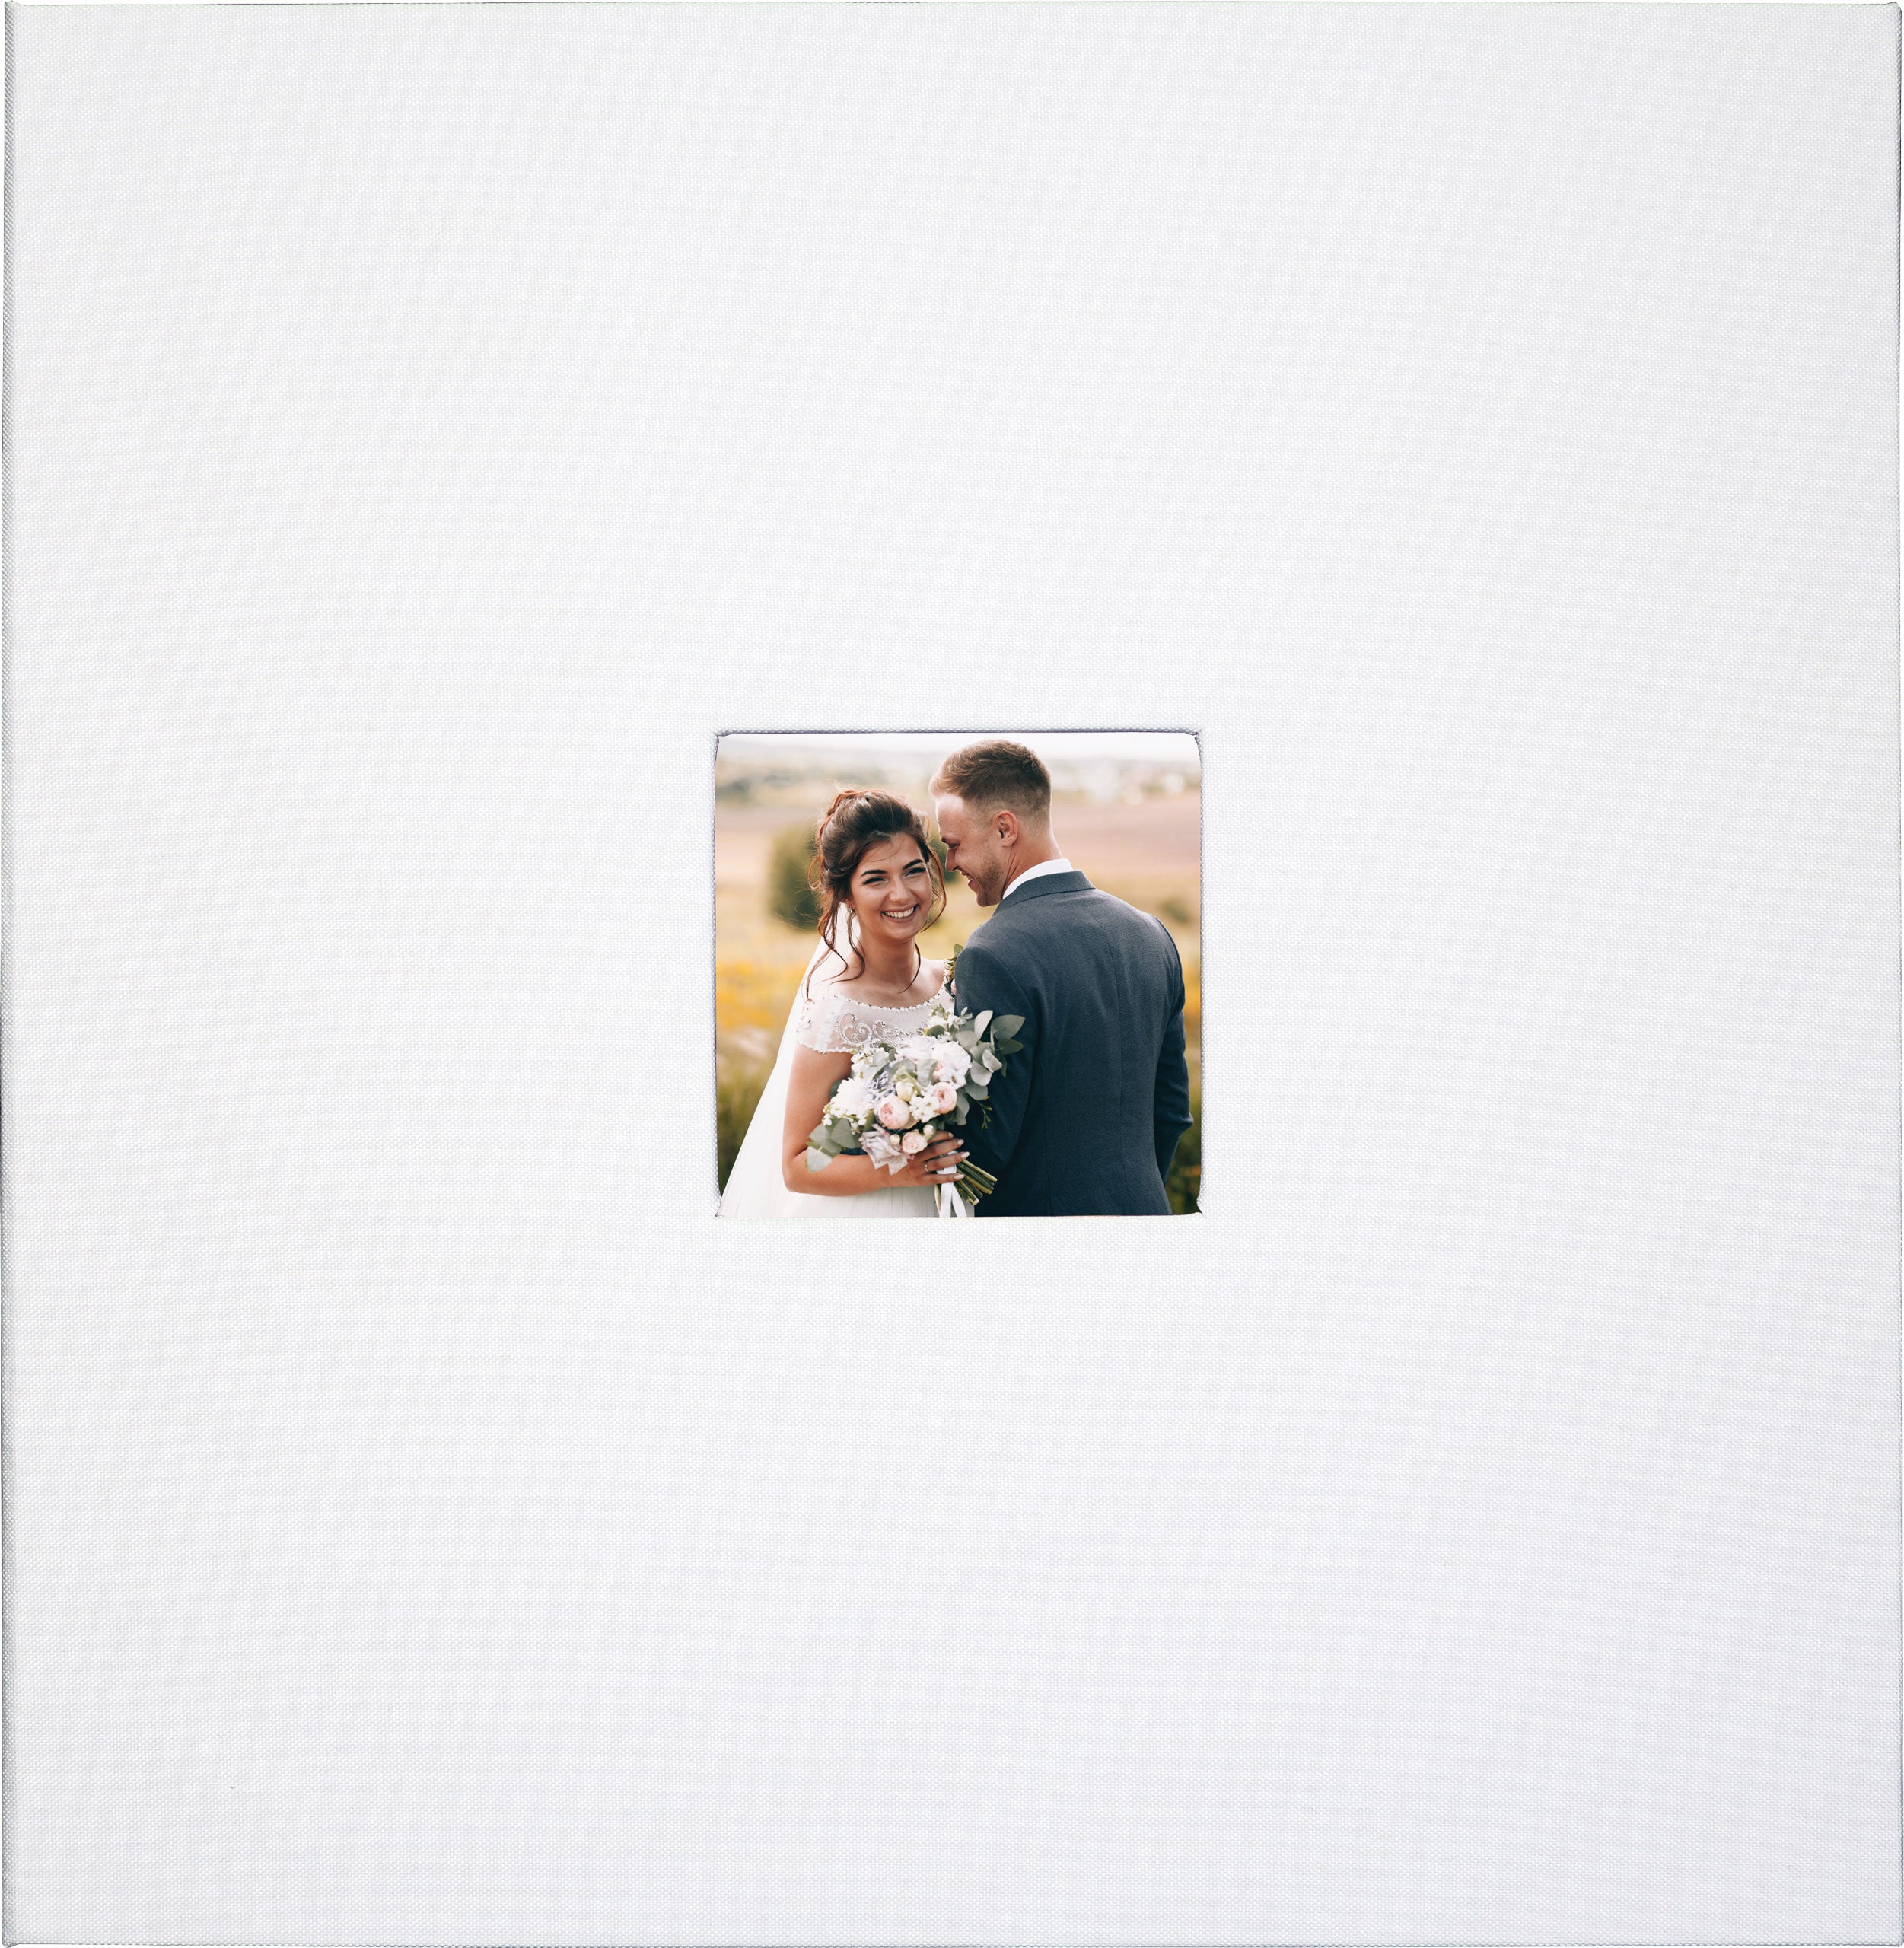 Album à personnaliser blanc Clairefontaine, 200 g/m², Blanc, 27 x 20 cm  62964